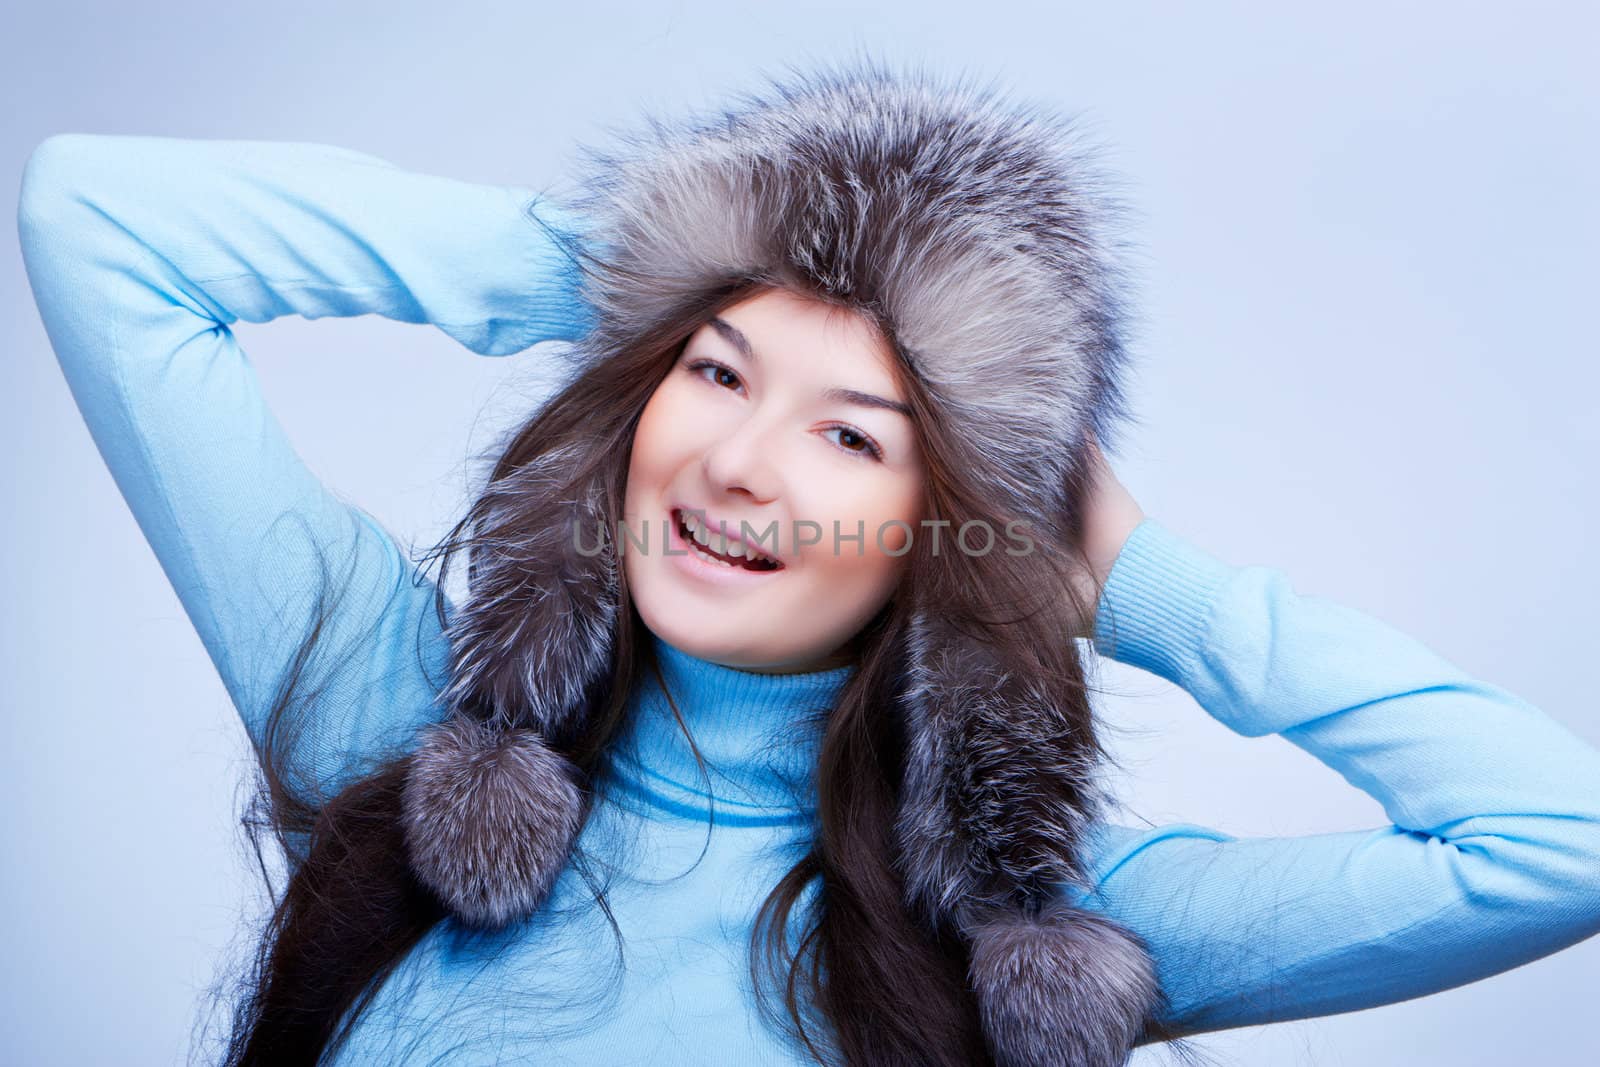 joyful woman in fur cap by nigerfoxy